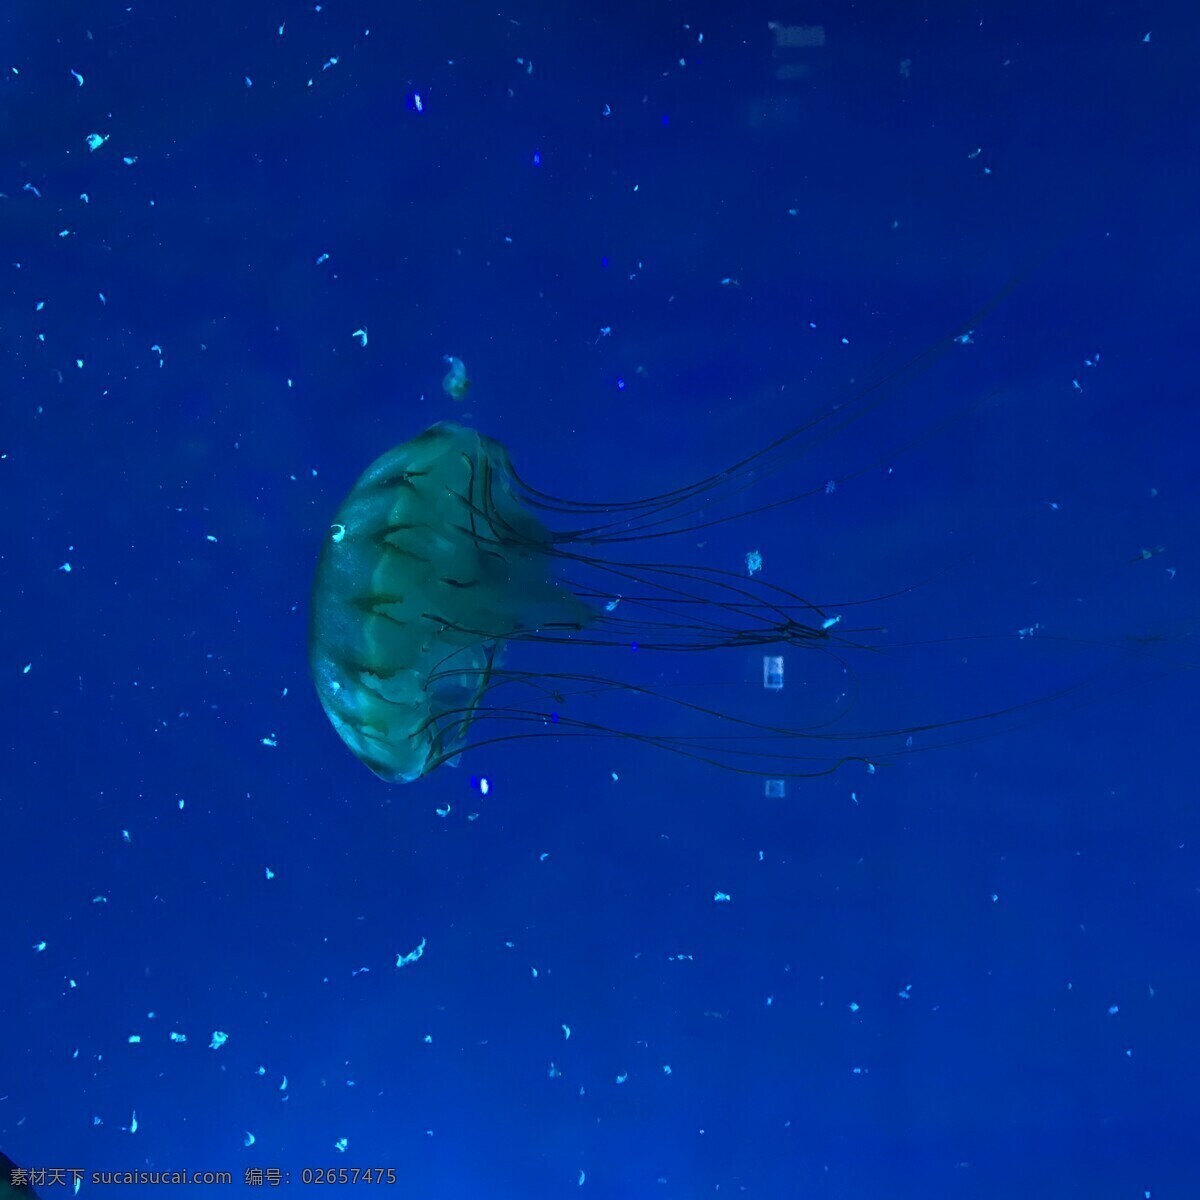 水母 水 鱼 海 深 自然 海洋 潜水藻类 插图 热带 野生动物 生物 生命 水下 夏天 背景 游泳 紫色 海洋世界 水族馆 动物 生物世界 海洋生物 摄影图